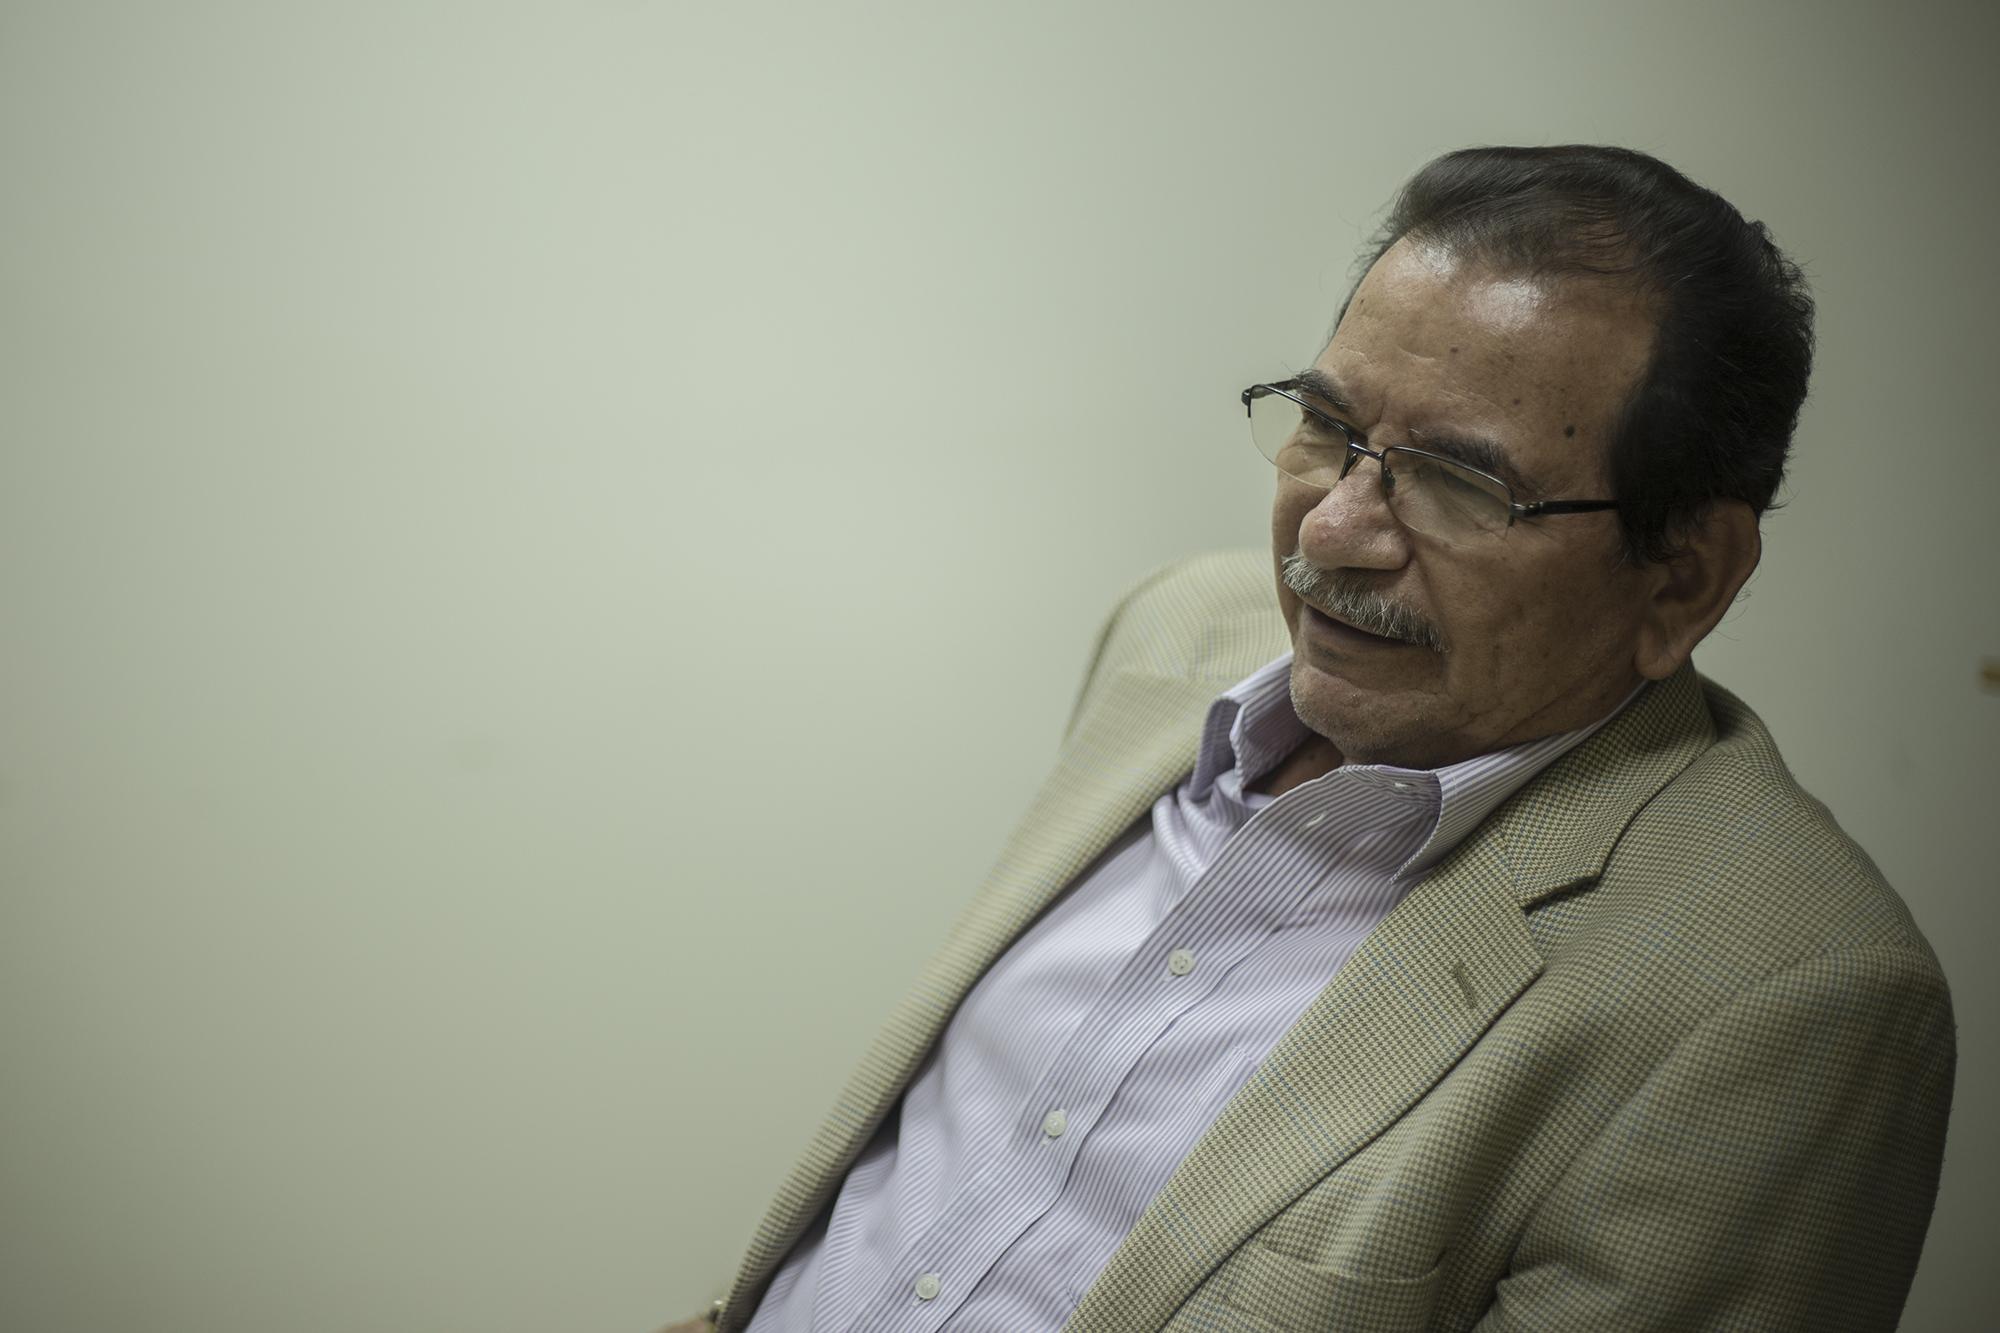 * Jorge Guzmán es exjuez de Instrucción que dirigió el caso sobre la Masacre de El Mozote y lugares aledaños de 2016 a 2021, cuando la Asamblea de Bukele aprobó una reforma que cesó de su cargo a los jueces mayores de 60 años.